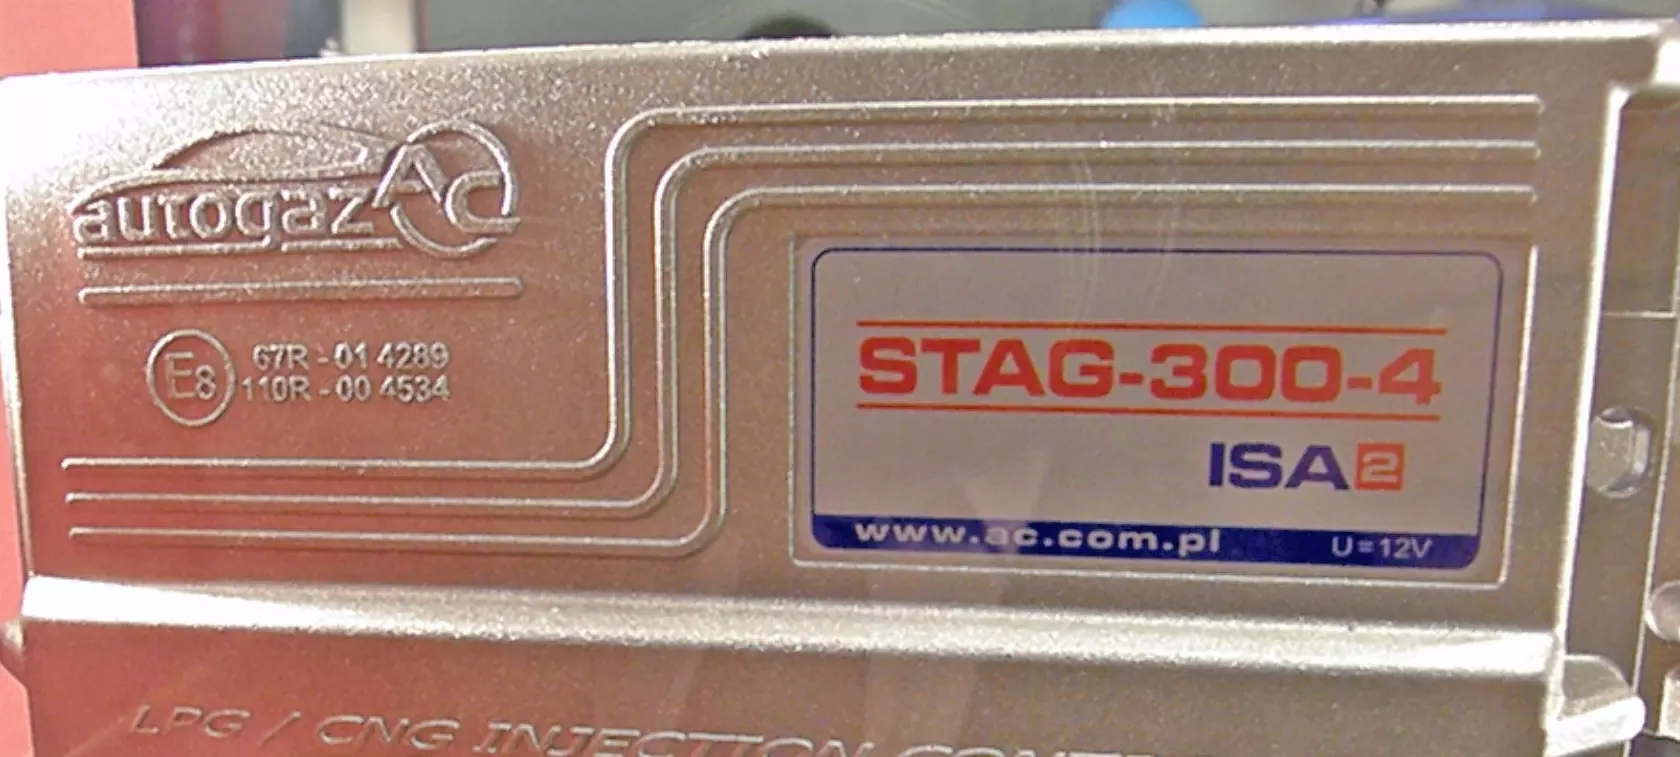 STAG-300 ISA2 - łatwa kalibracja